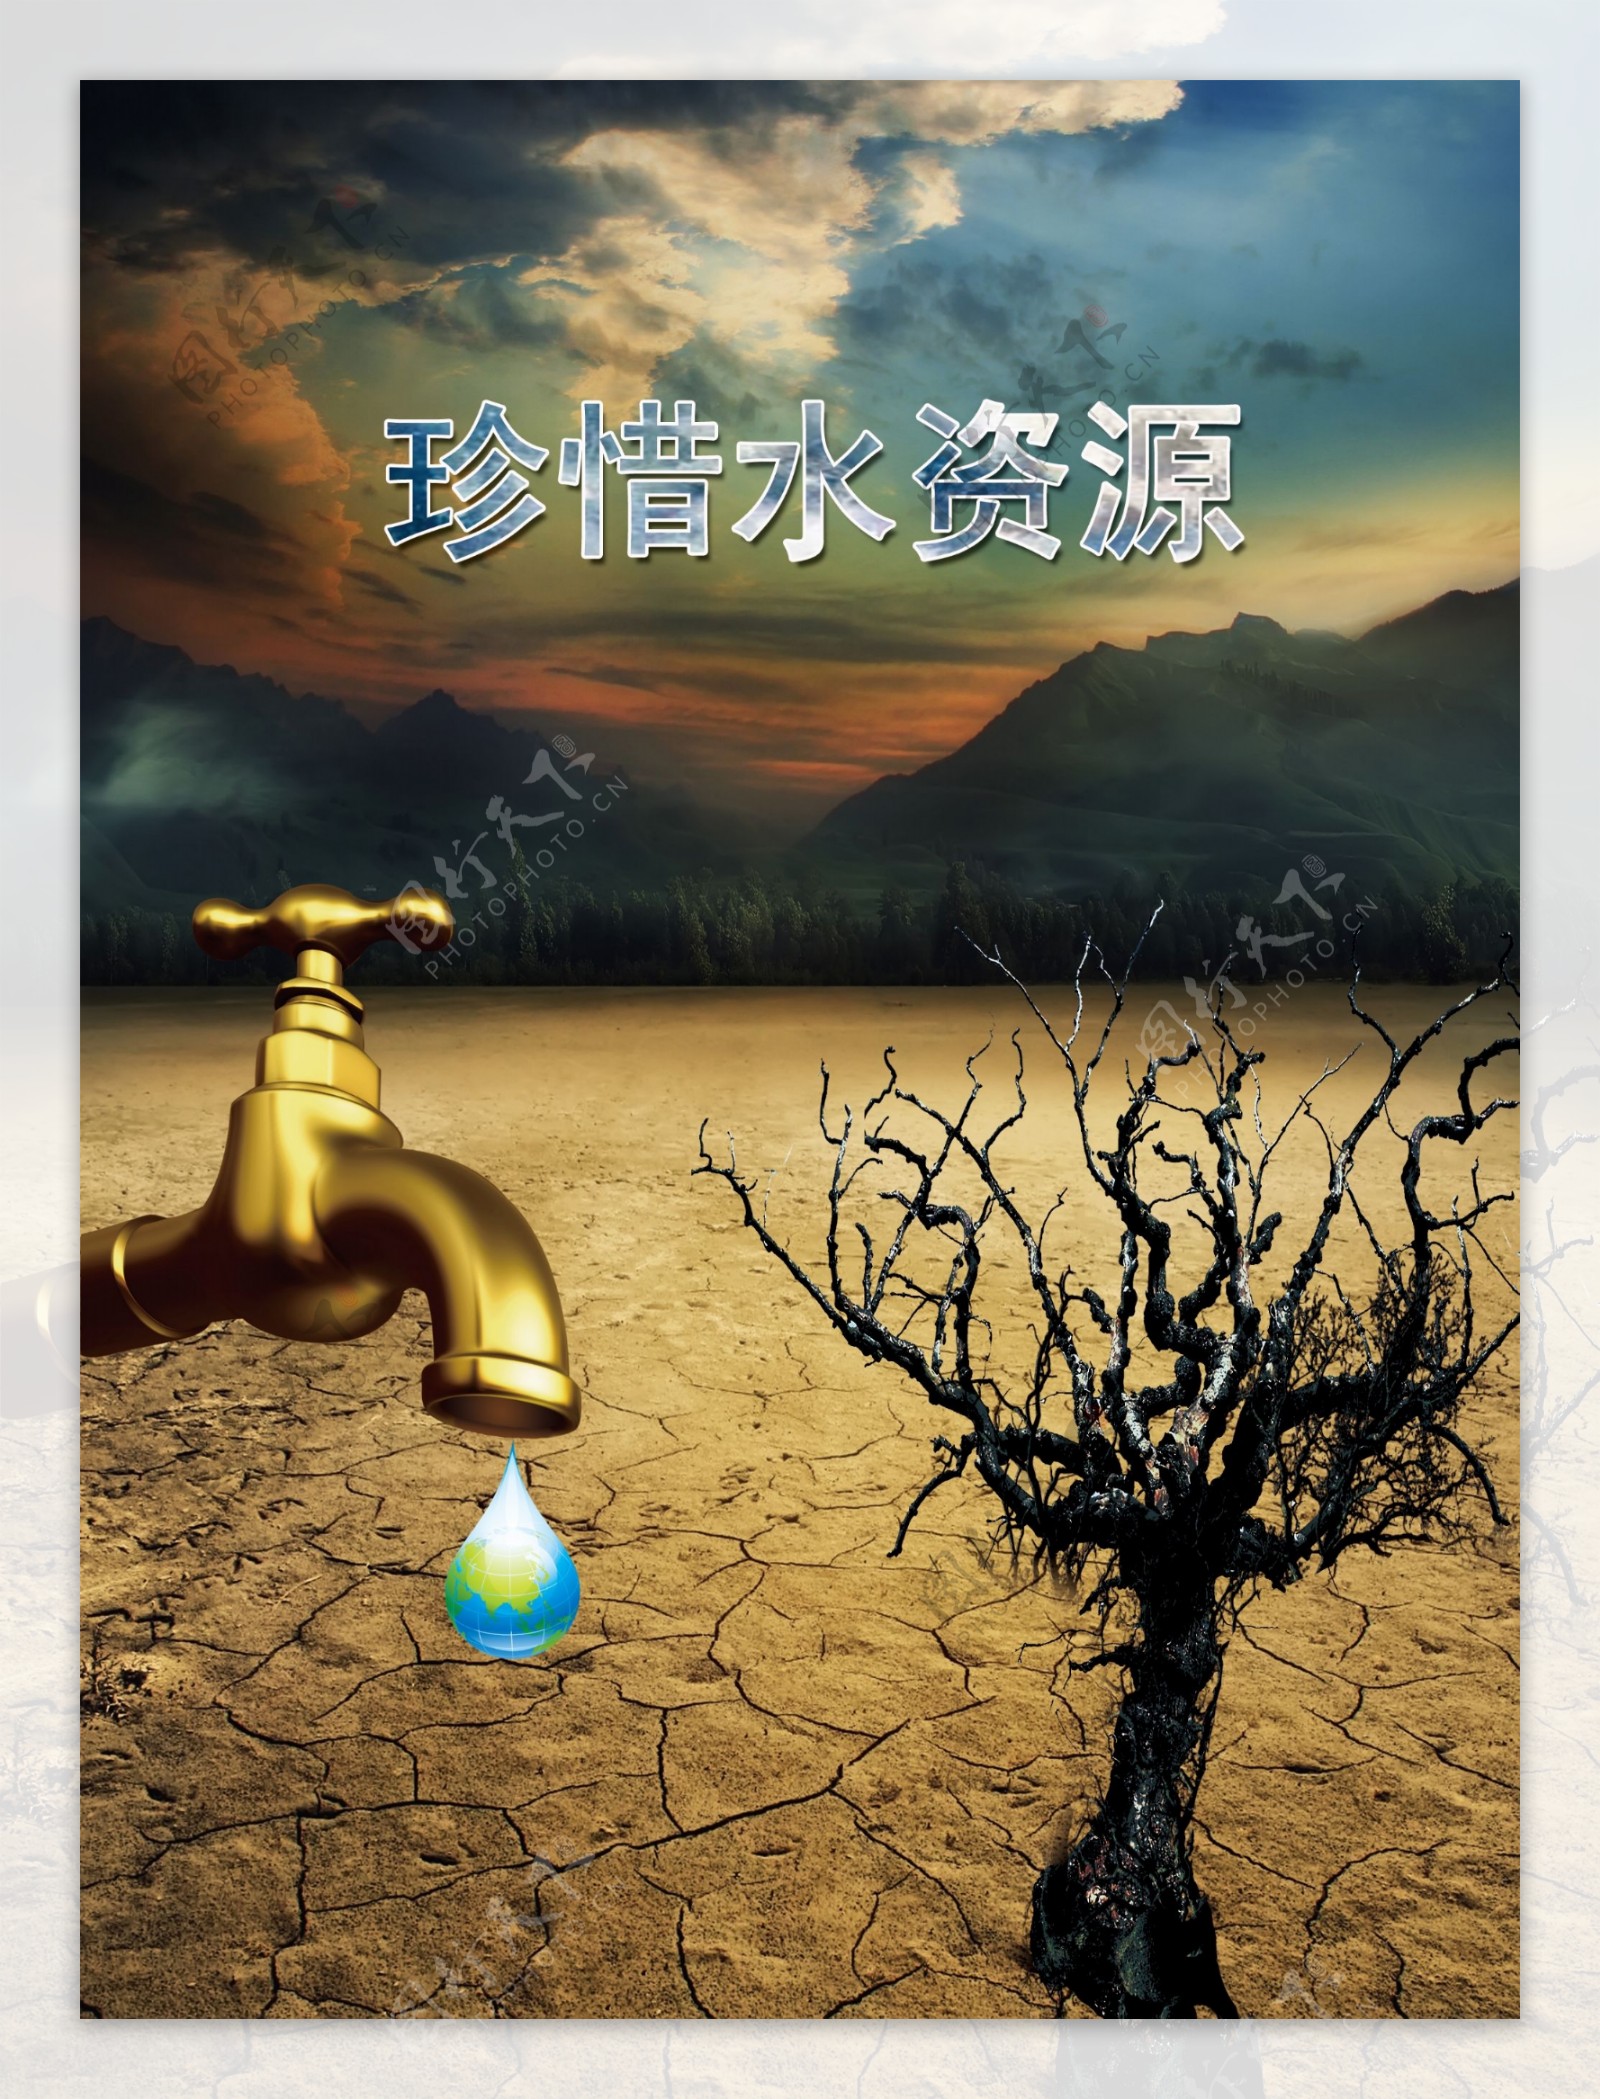 公益广告珍惜水资源图片